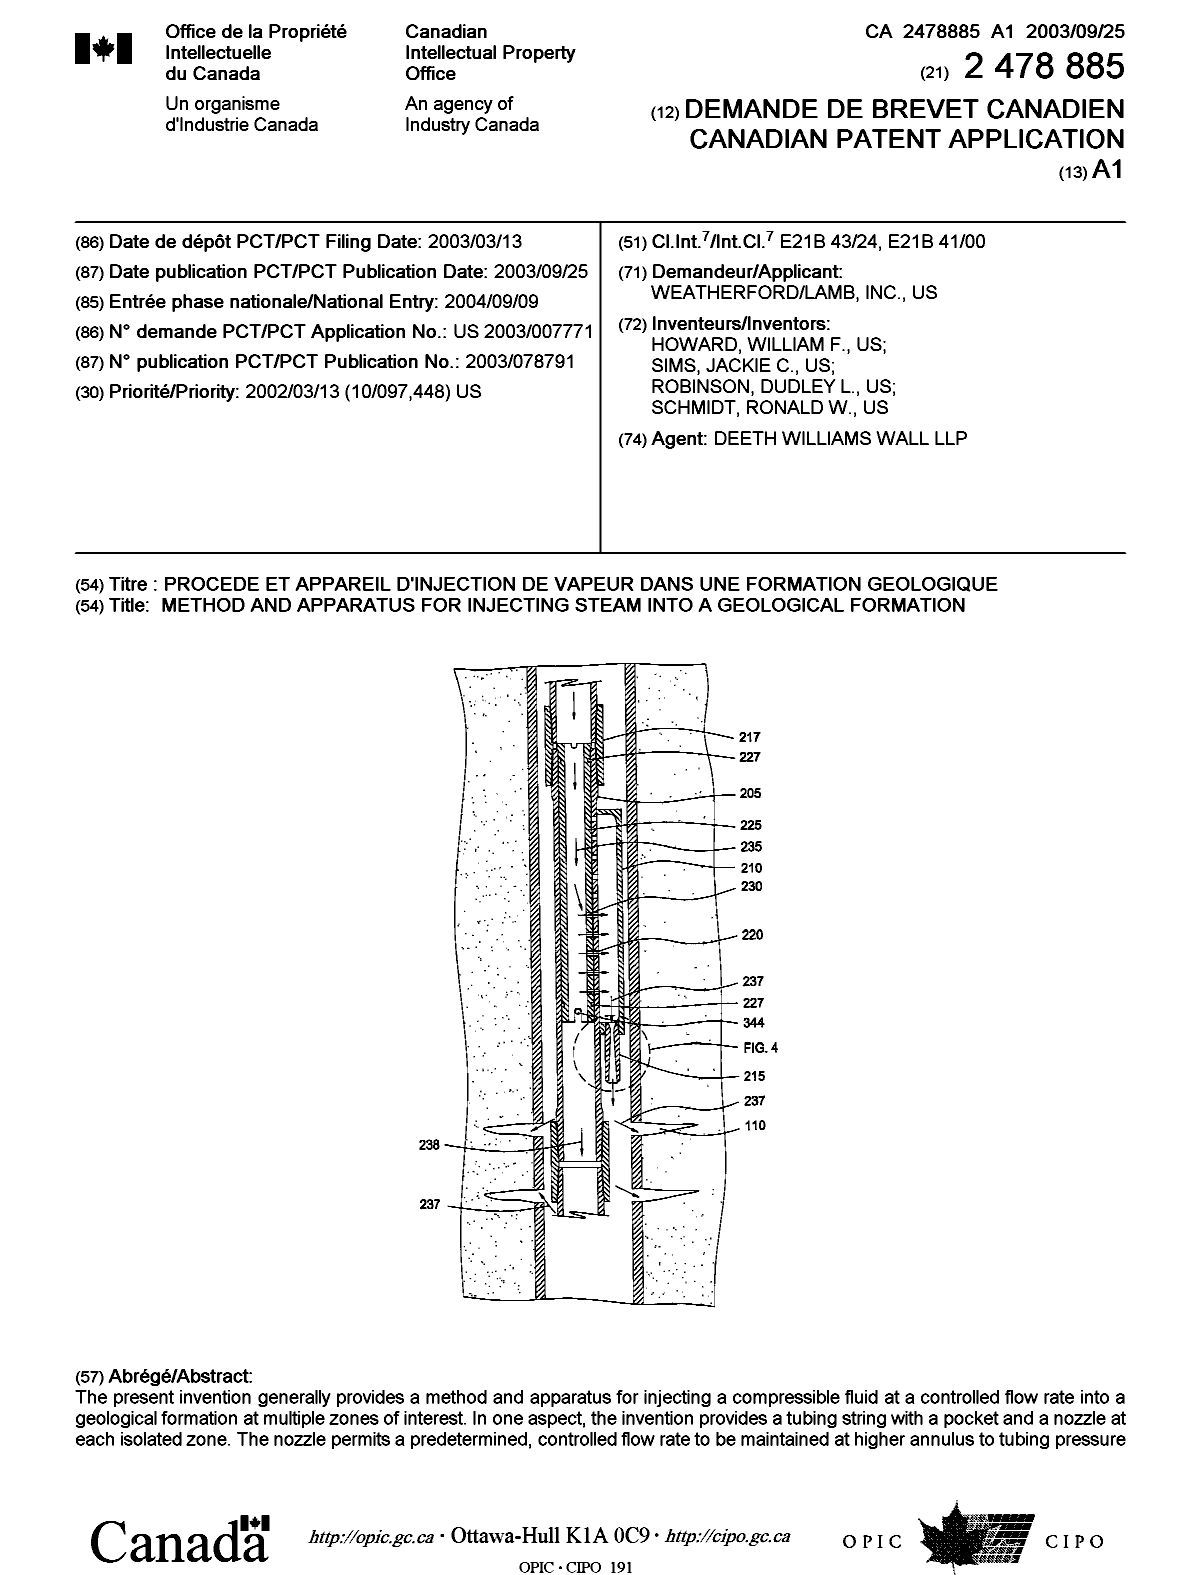 Document de brevet canadien 2478885. Page couverture 20041110. Image 1 de 2